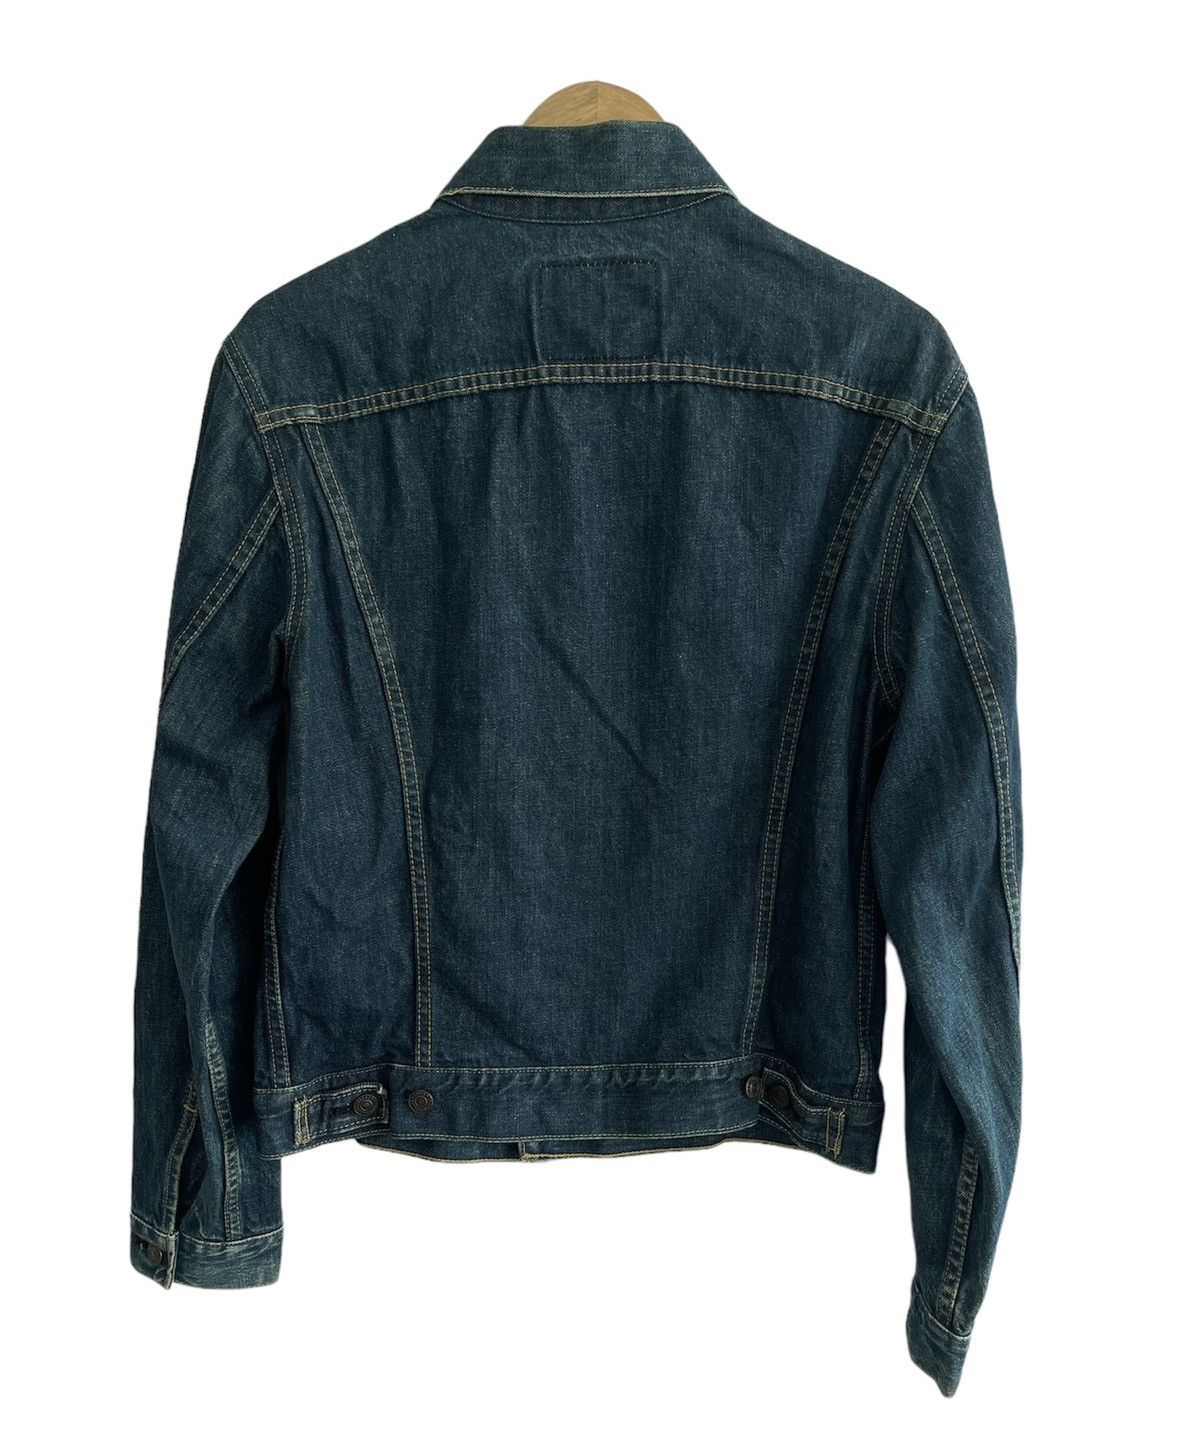 Vintage Levis Denim Jacket - 2